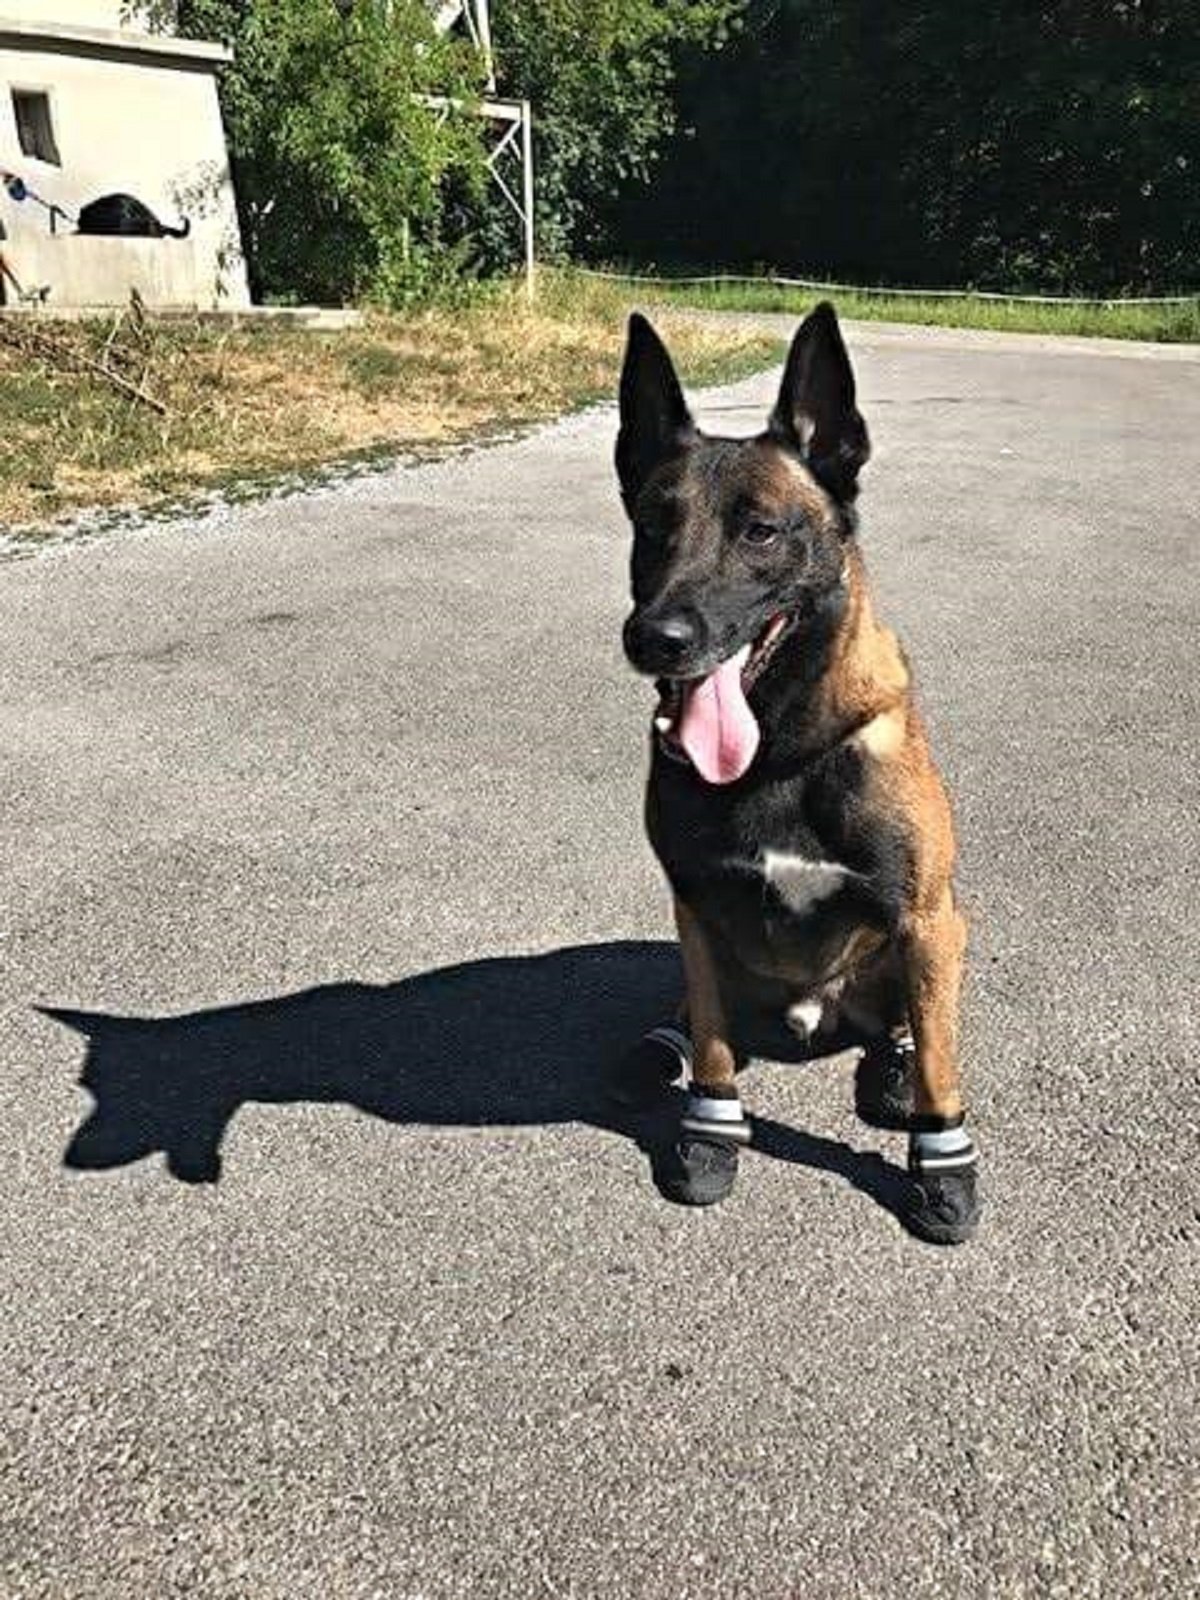 La Policia de Zuric protegeix els gossos perquè no es cremin a l'asfalt quan fa calor / Foto: Policia de Zuric Twitter